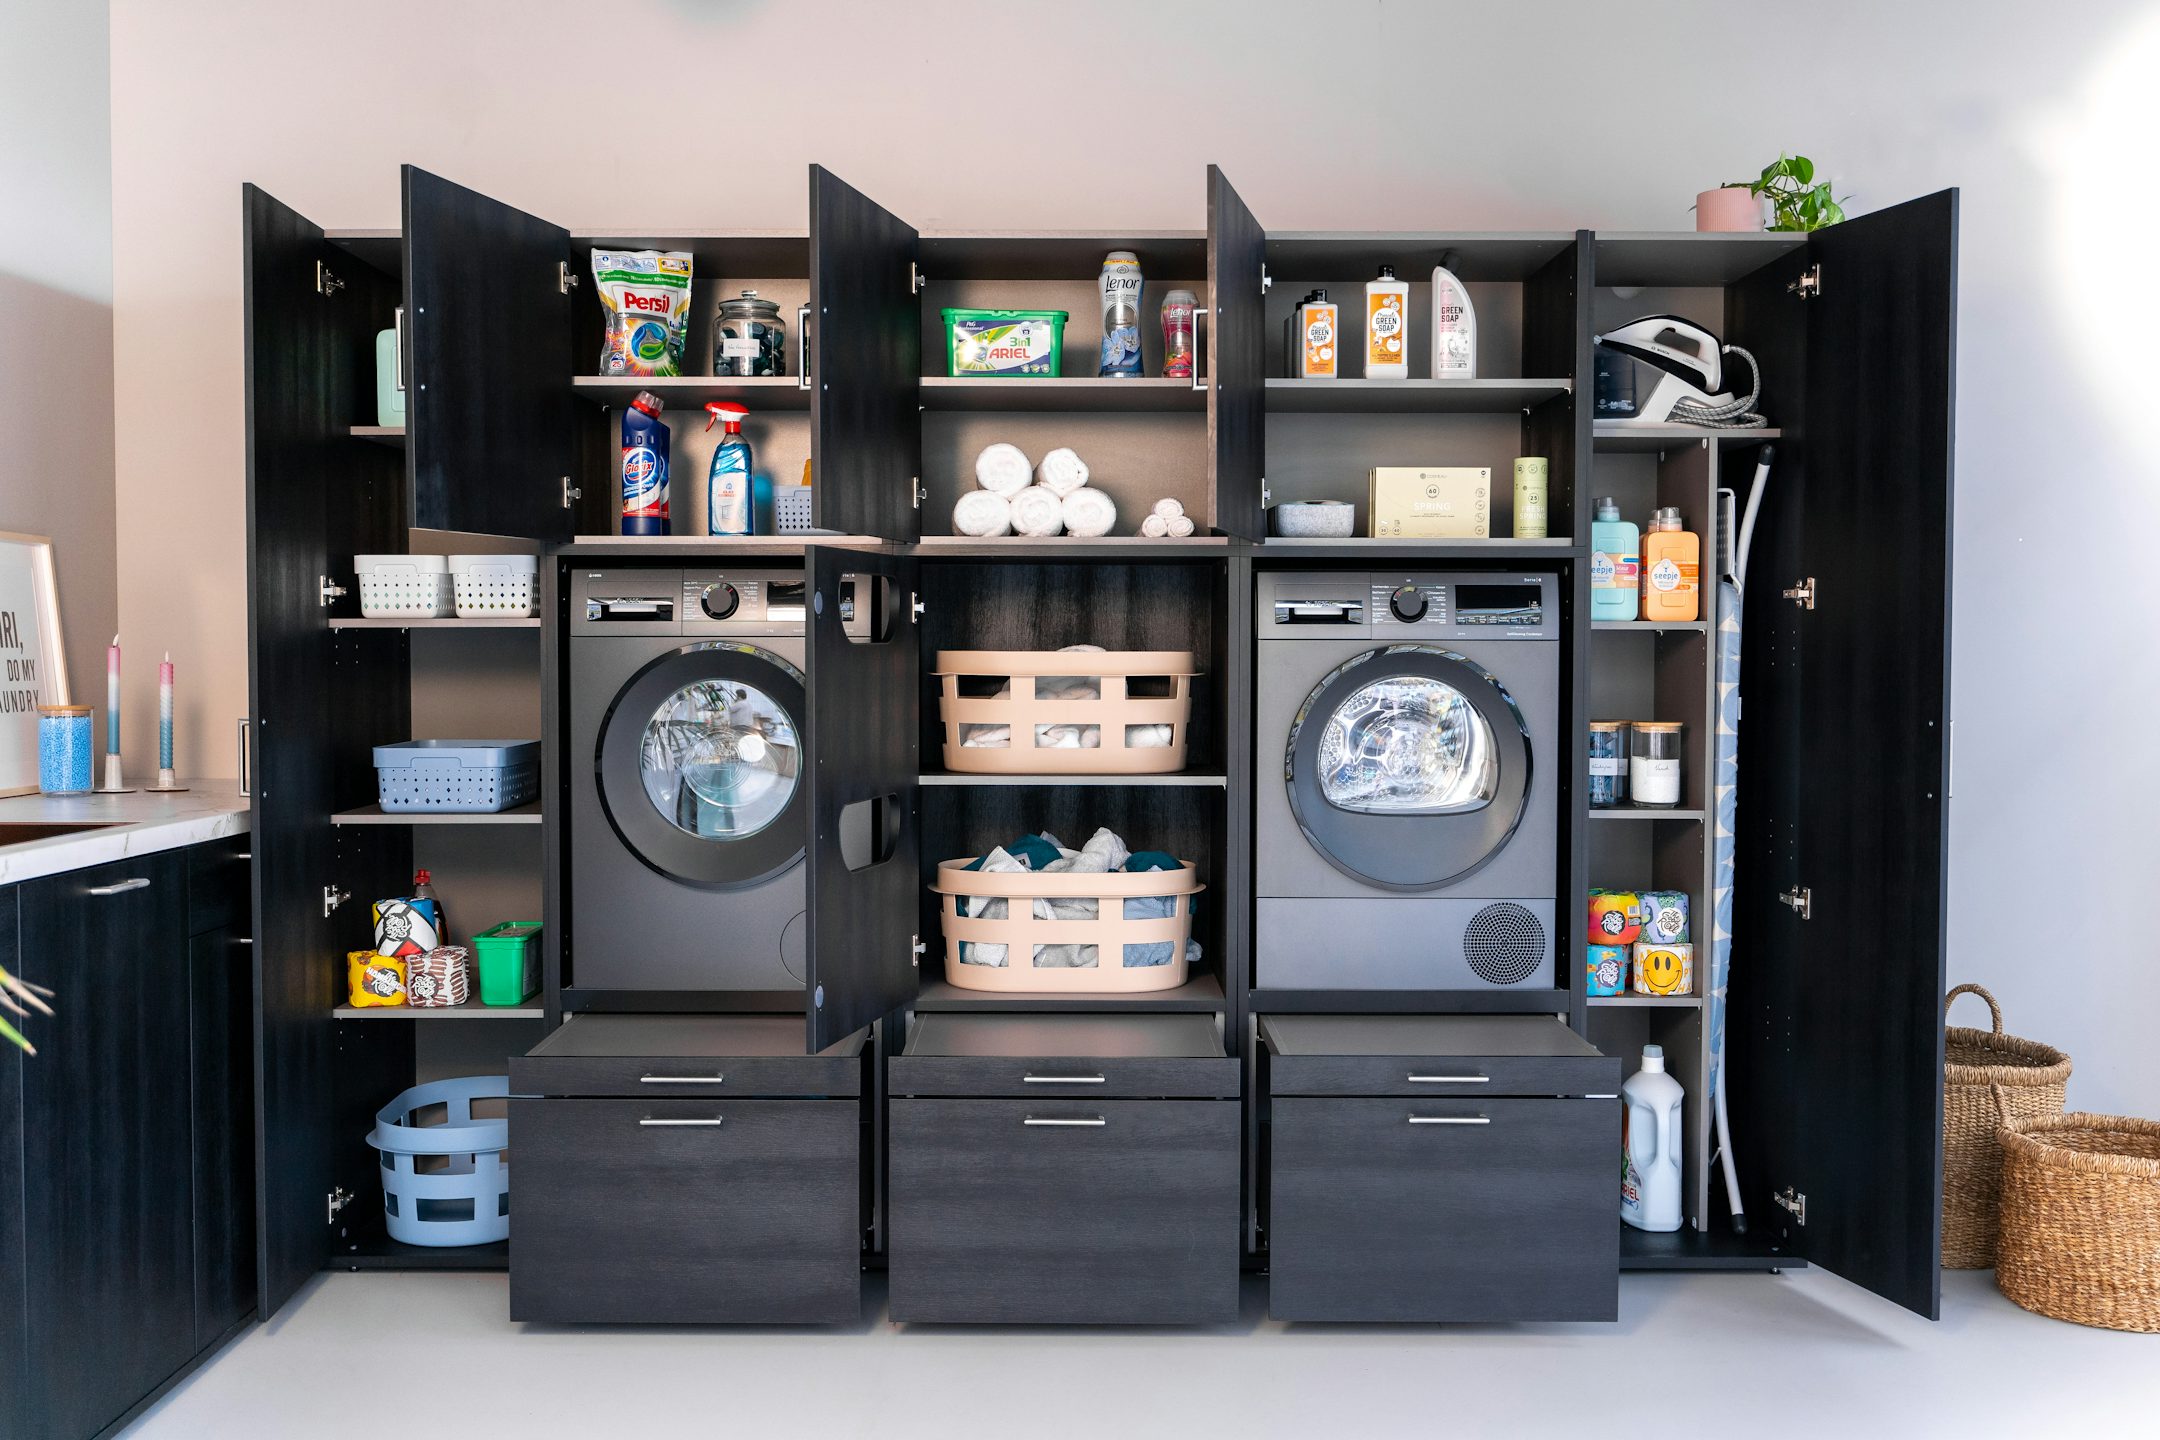 Schwarze Schrankwand mit optimalen Stauraum im Hauswirtschaftsraum. Ordnung und Integration durch Waschturm